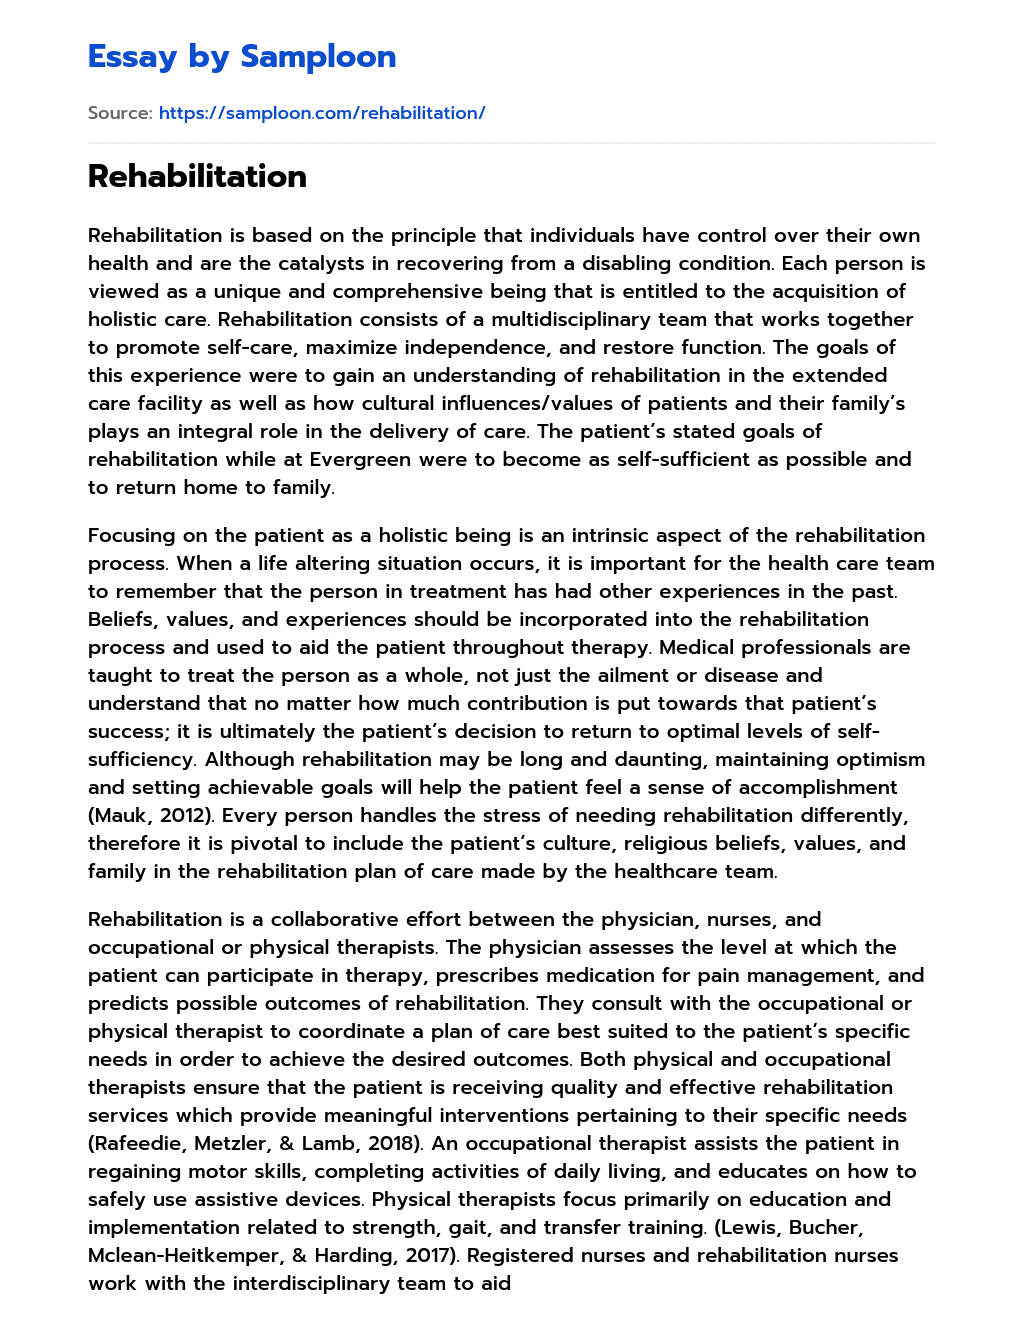 Rehabilitation essay